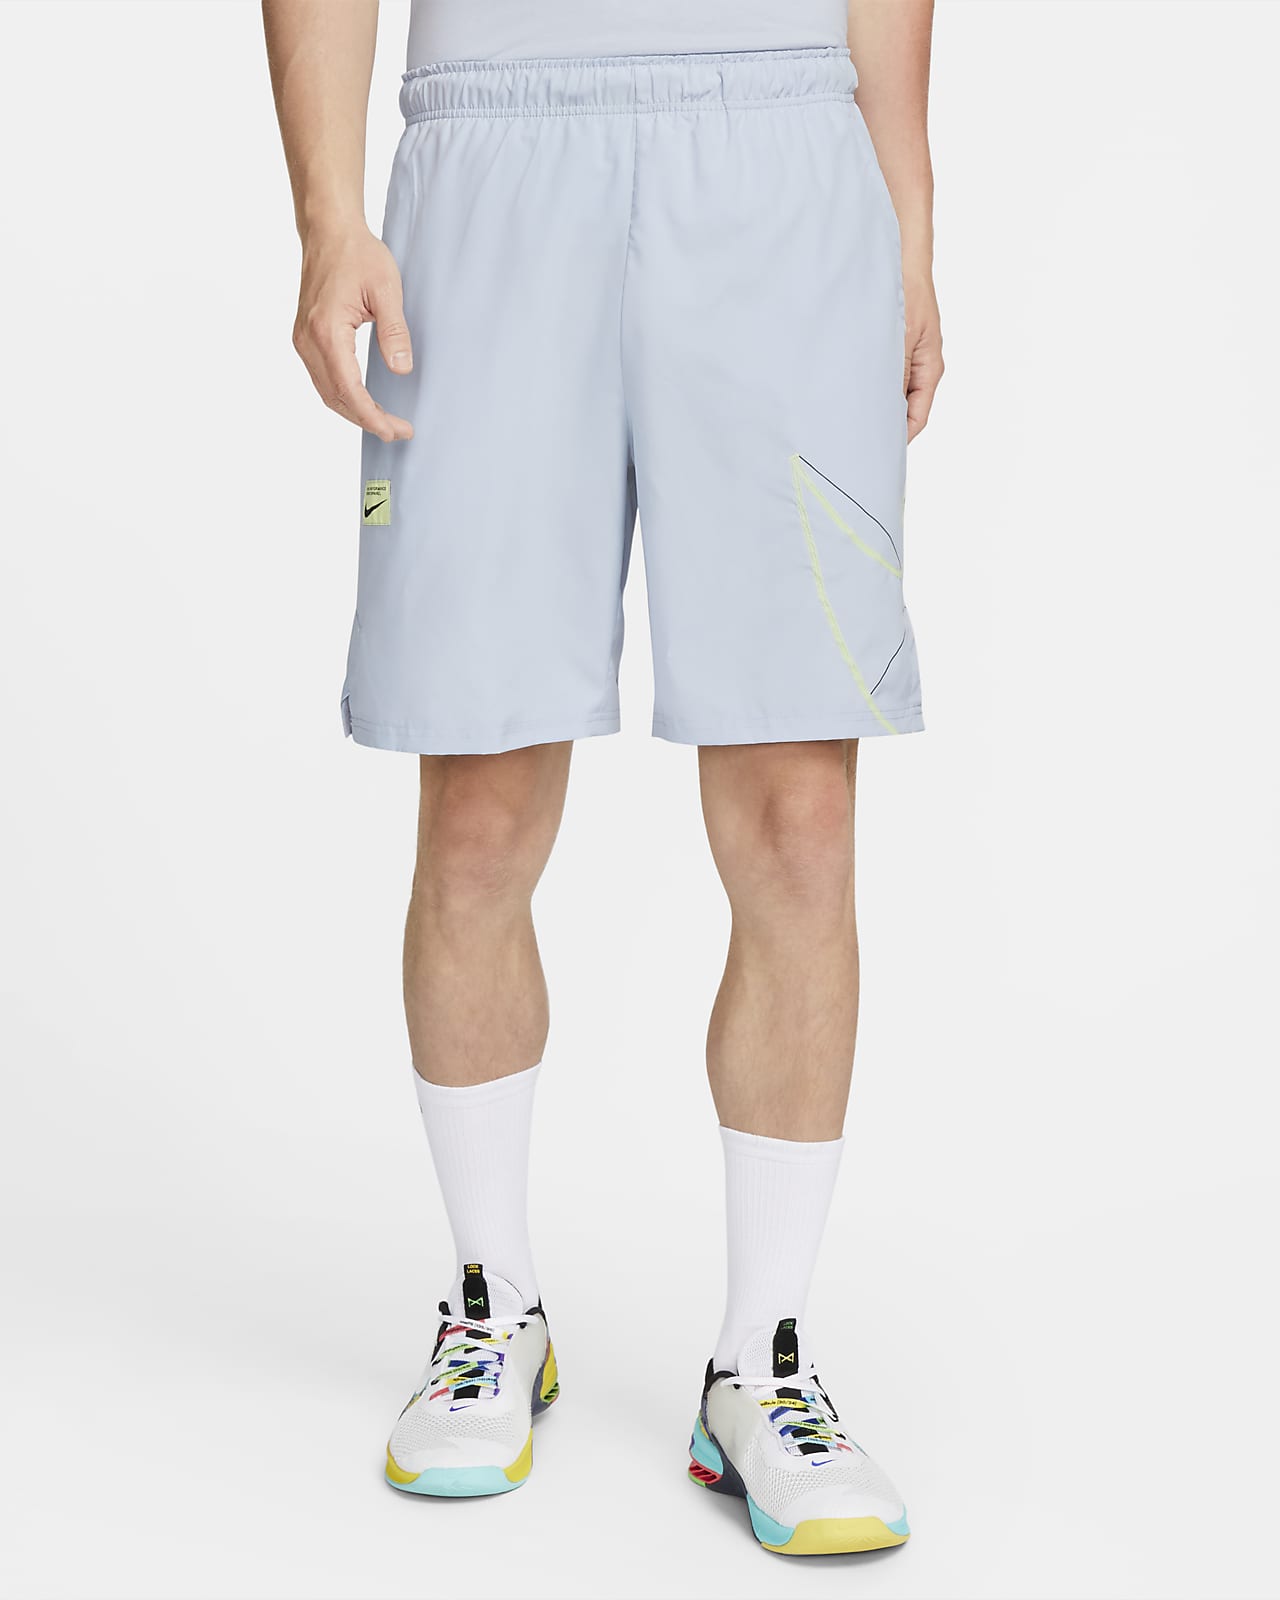 Nike Dri-FIT Flex Men's 9" Woven Fitness Shorts